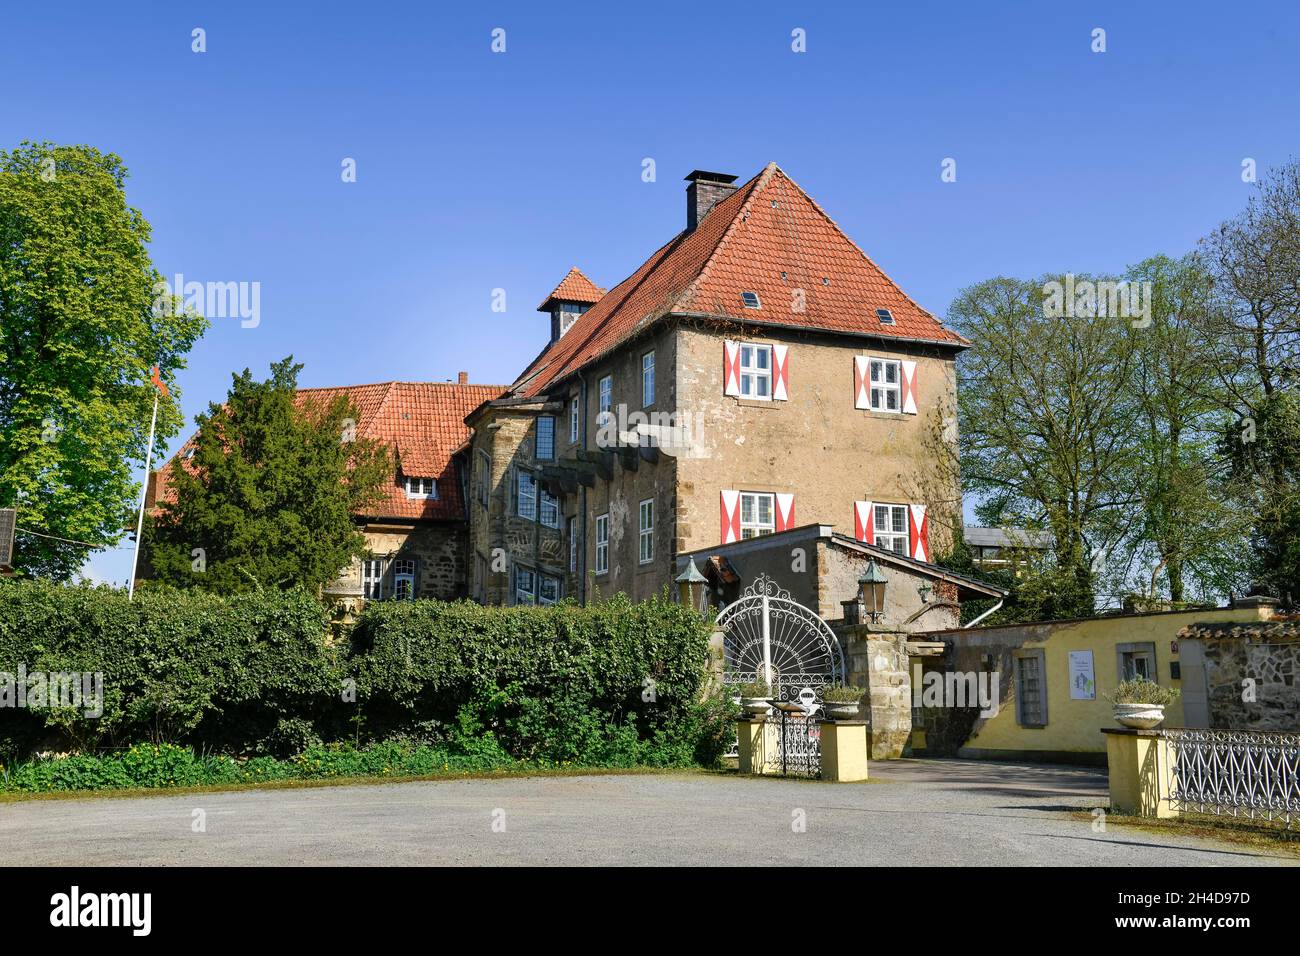 Schloss Hotel, Petershagen, Kreis Minden-Lübbecke, Nordrhein-Westfalen, Deutschland Stockfoto